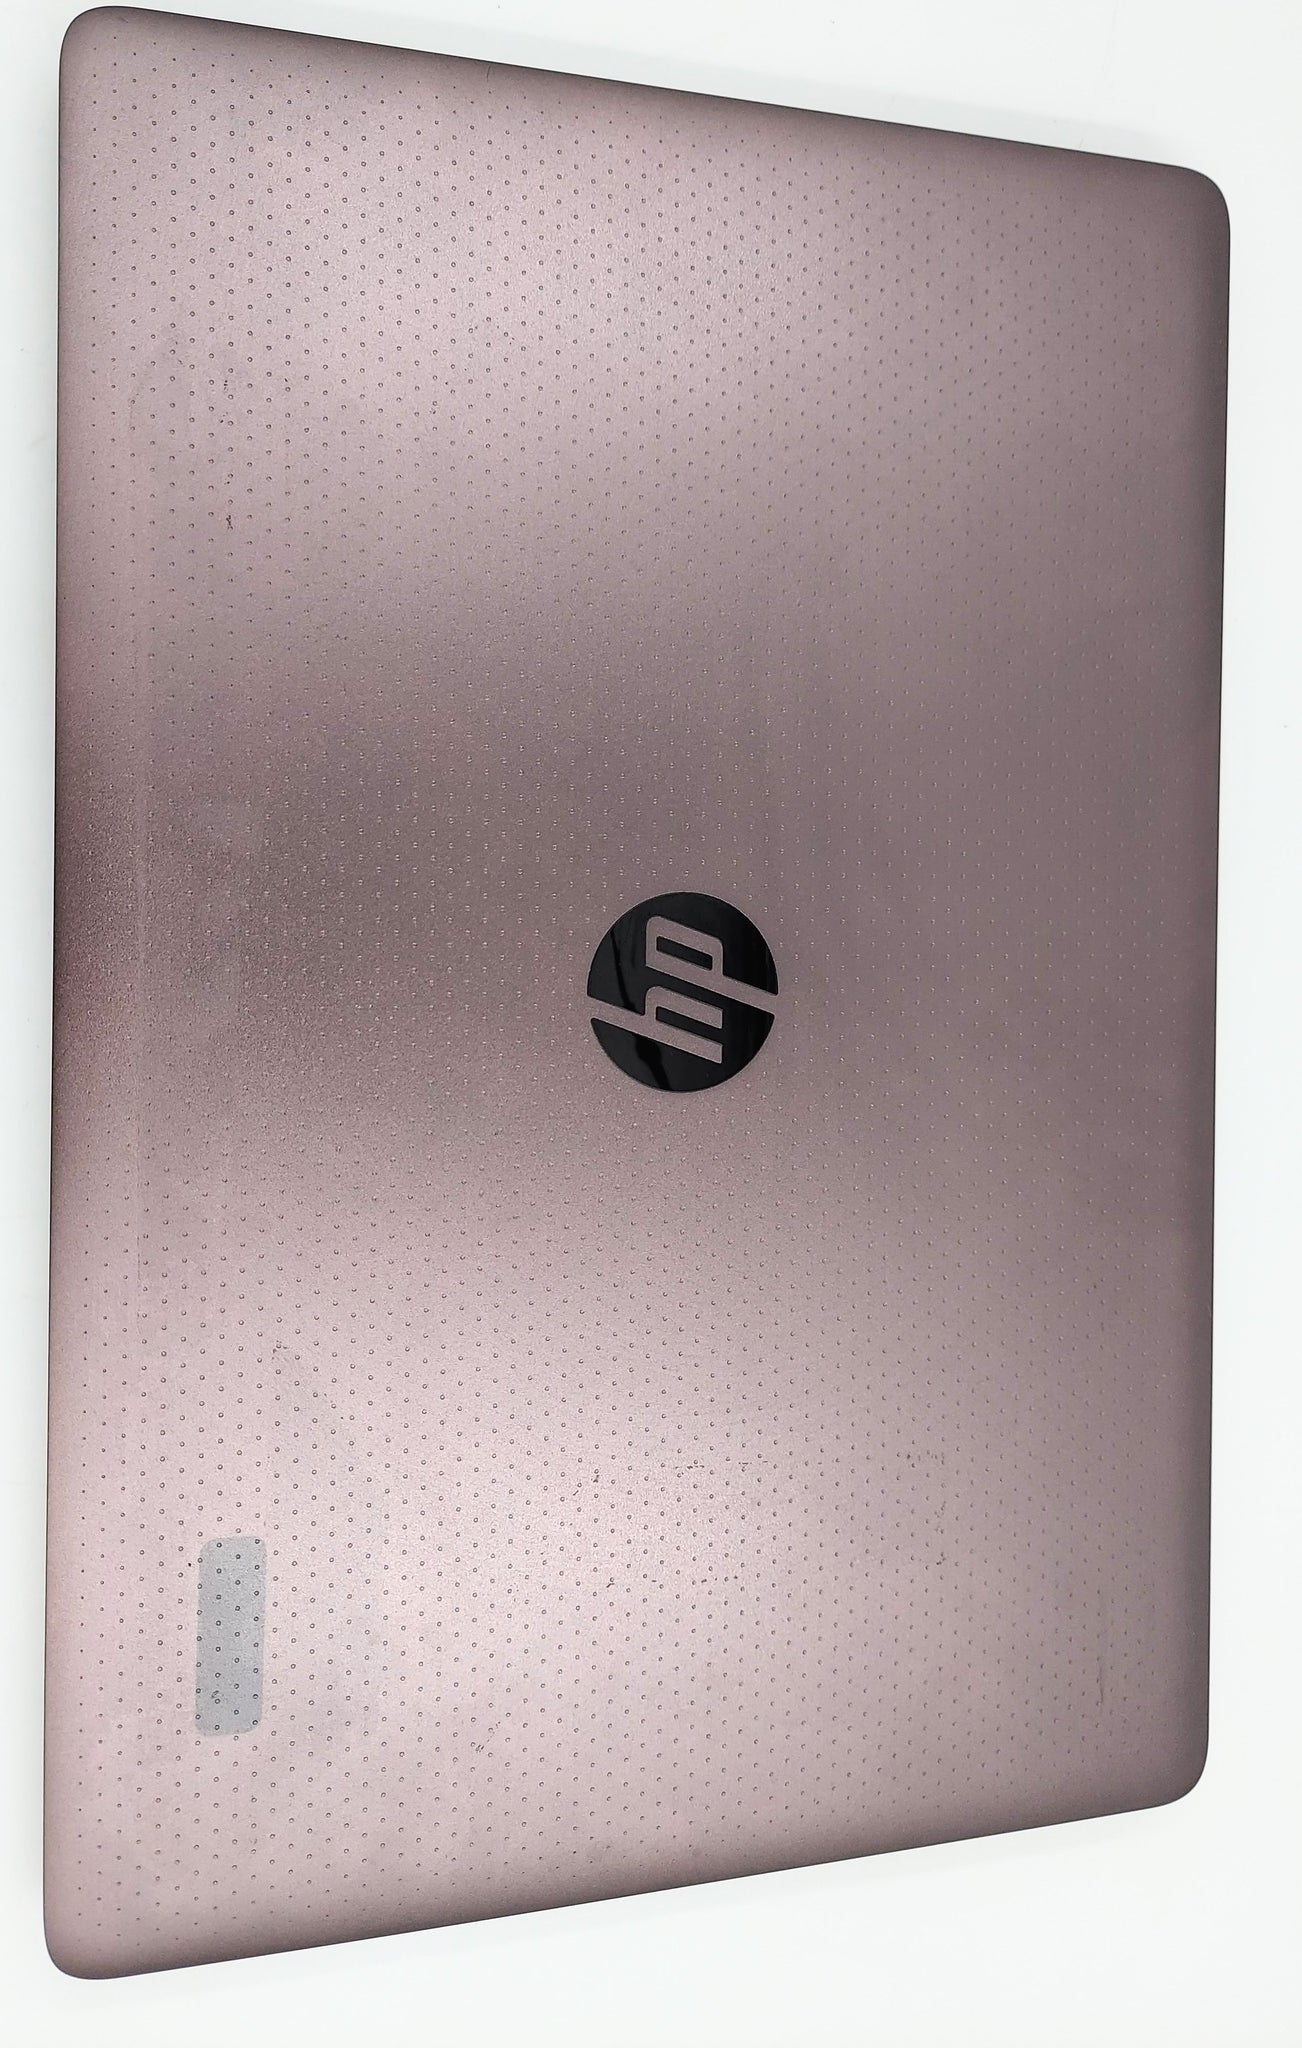 HP ZBook Studio G3 i7-6700HQ 15.6